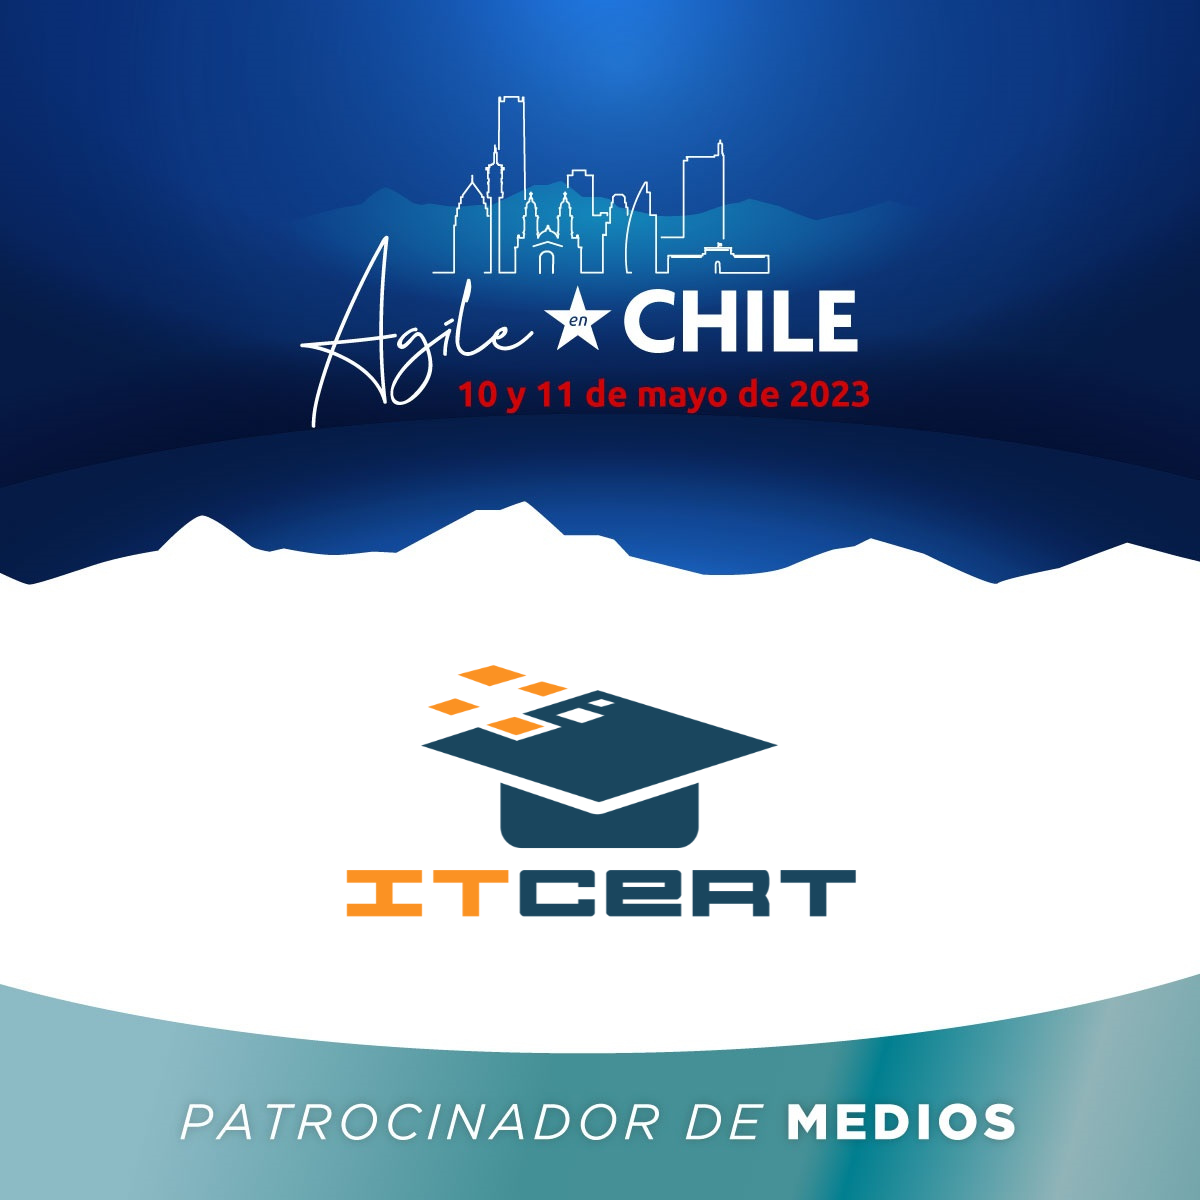 ITCert patrocina el evento Agile en Chile 